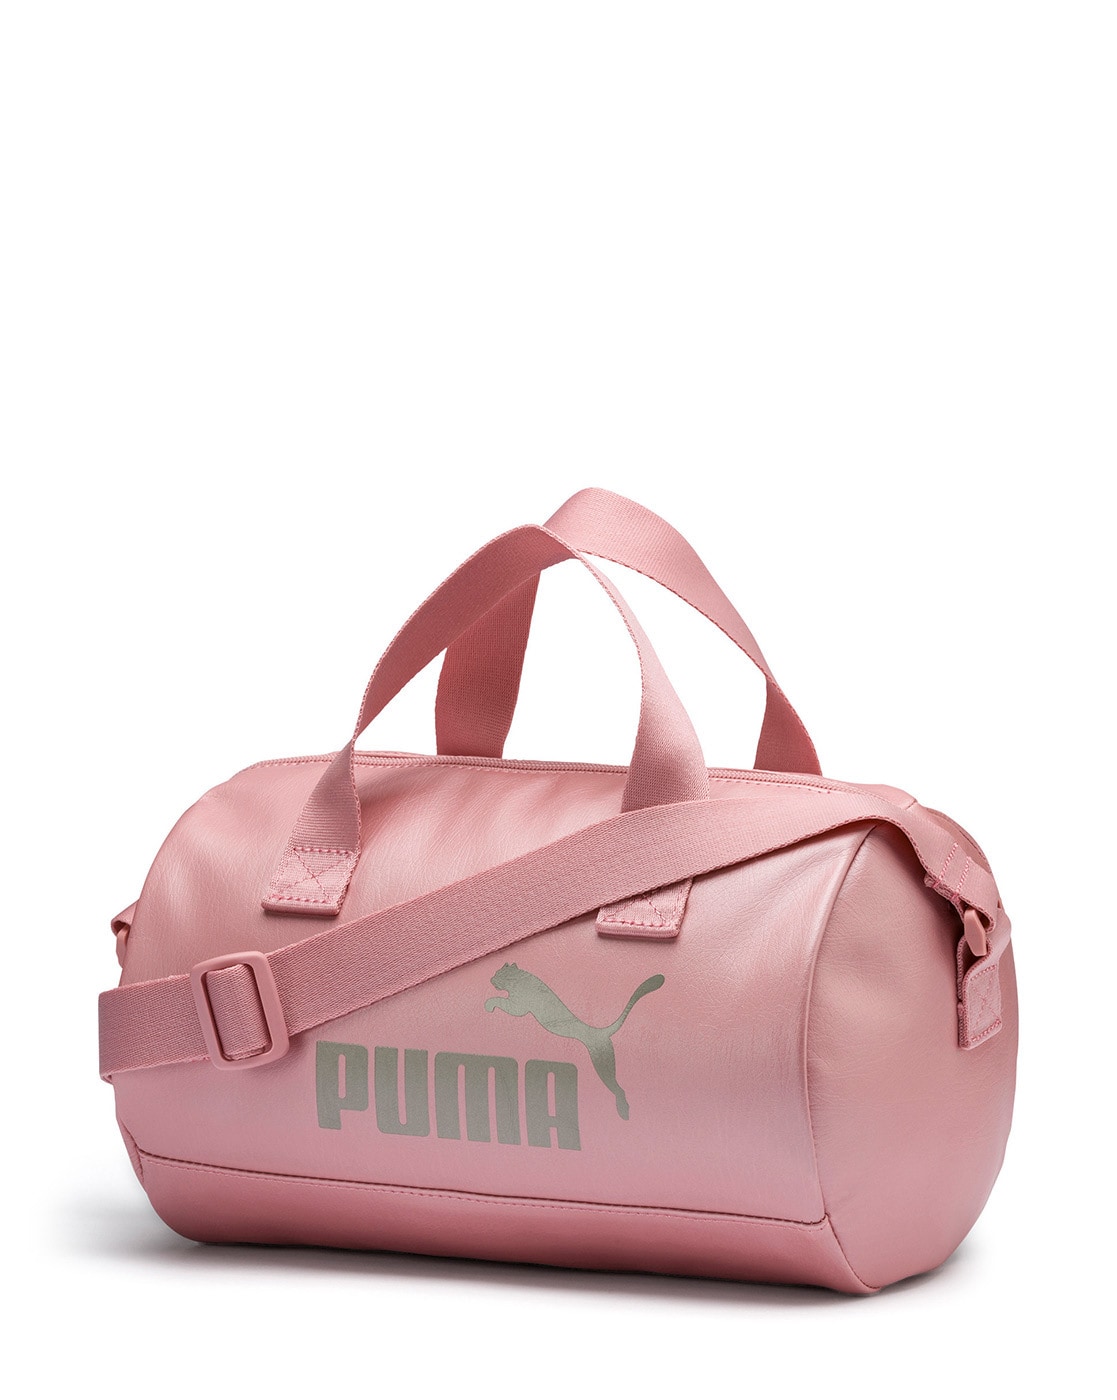 puma duffle bag pink